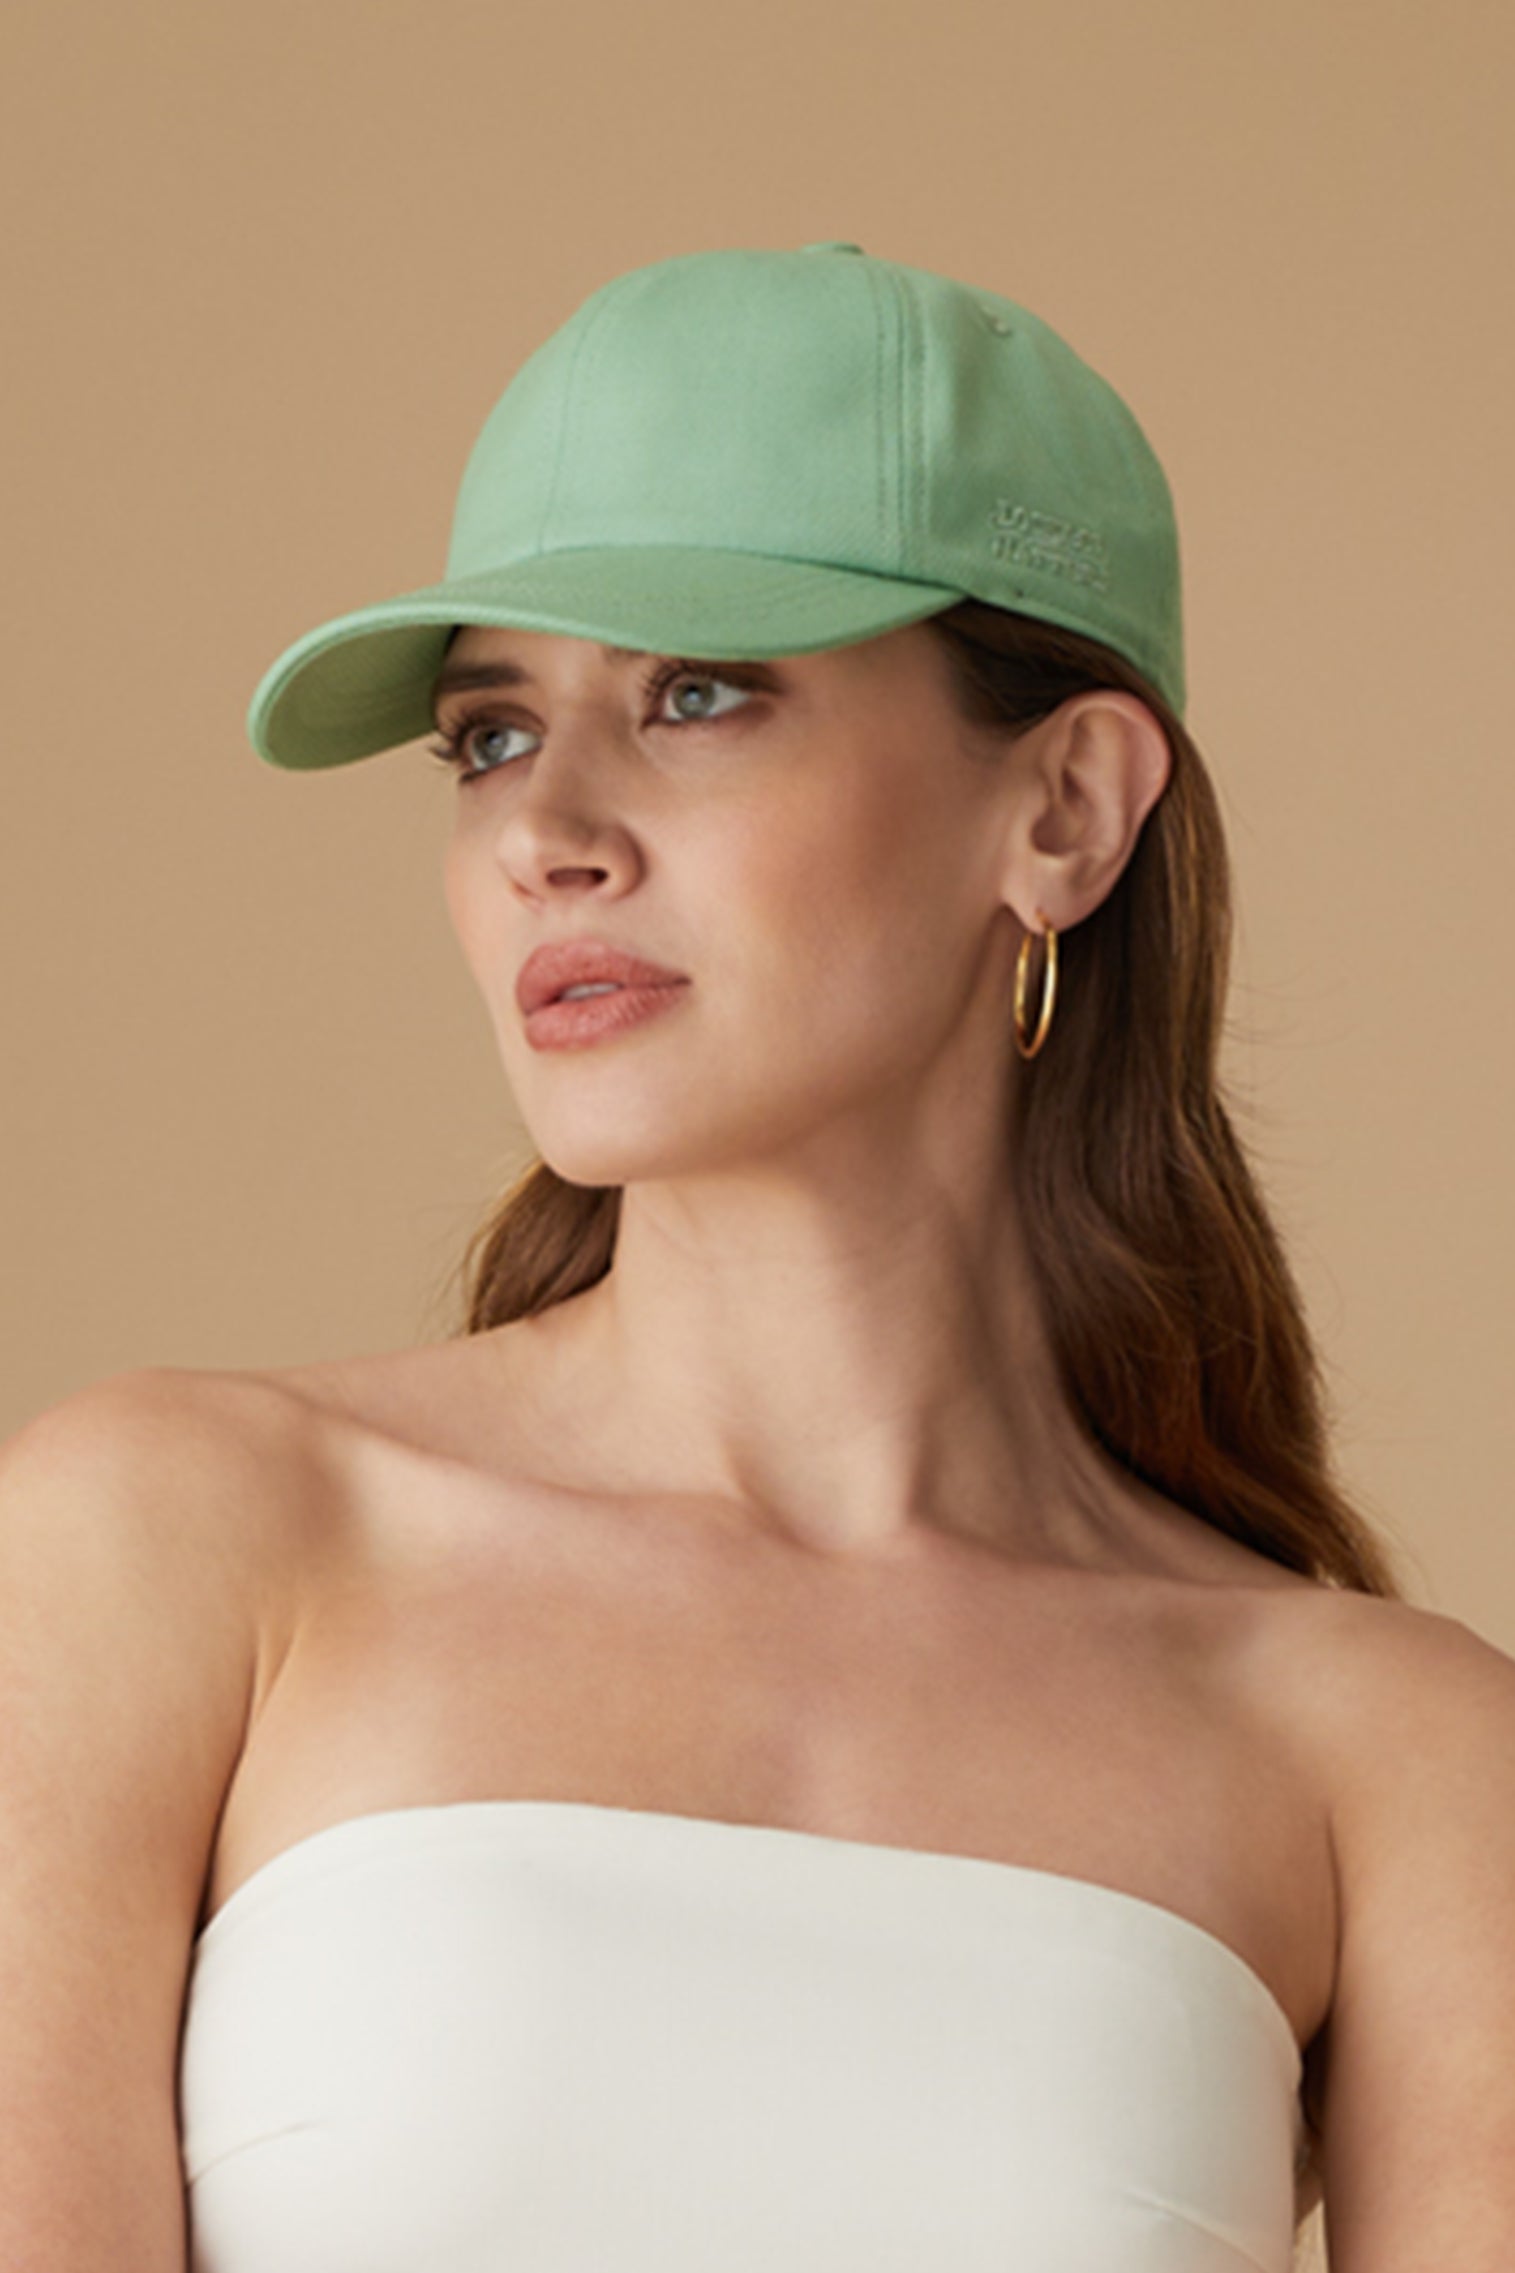 Adjustable Green Baseball Cap - Women’s Hats - Lock & Co. Hatters London UK